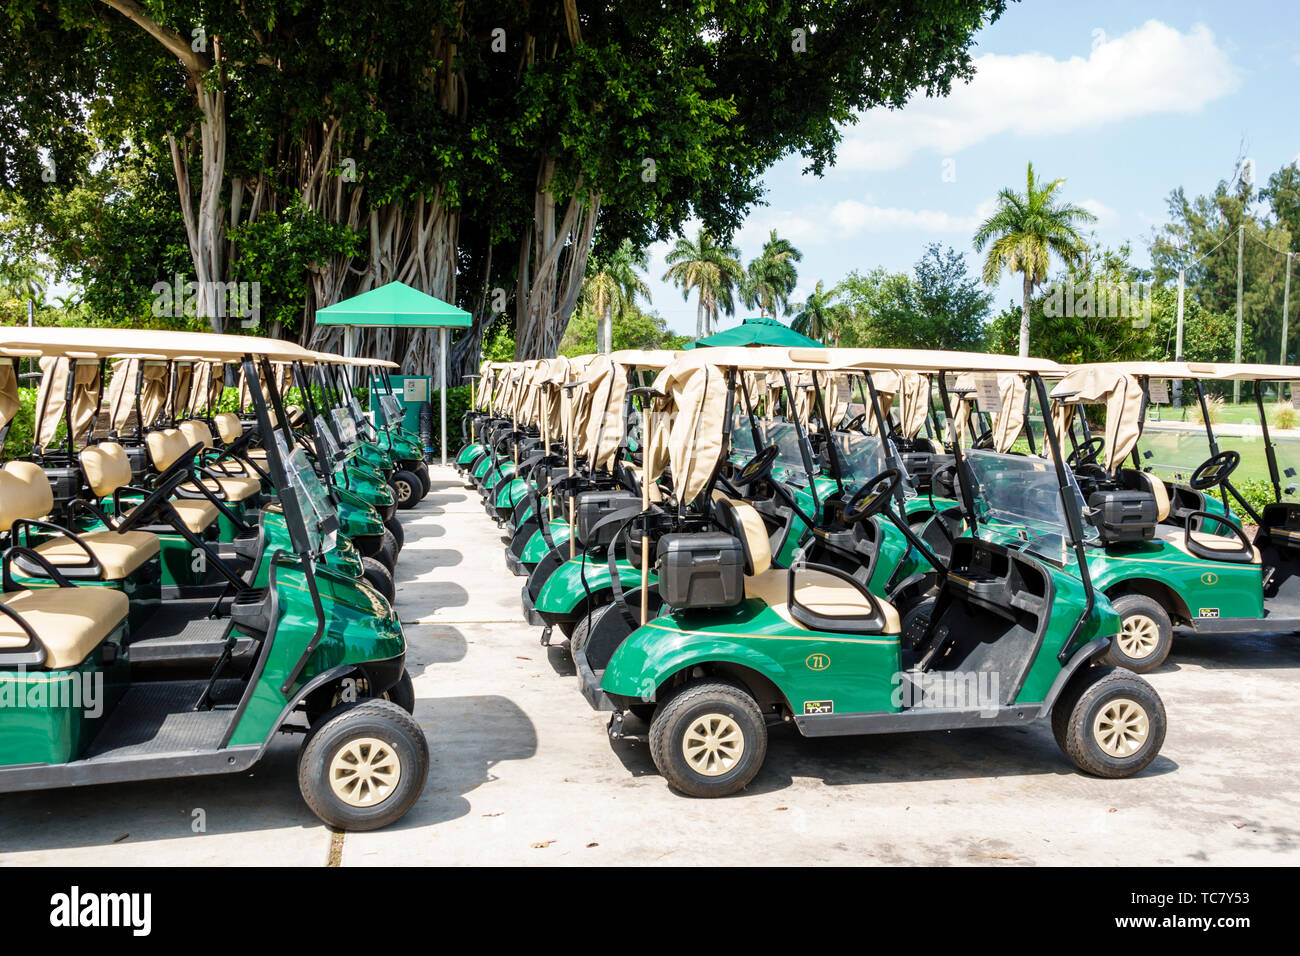 Miami Beach Florida,Normandy Shores Public Golf Club Course,electric cart carts,FL190430078 Stock Photo